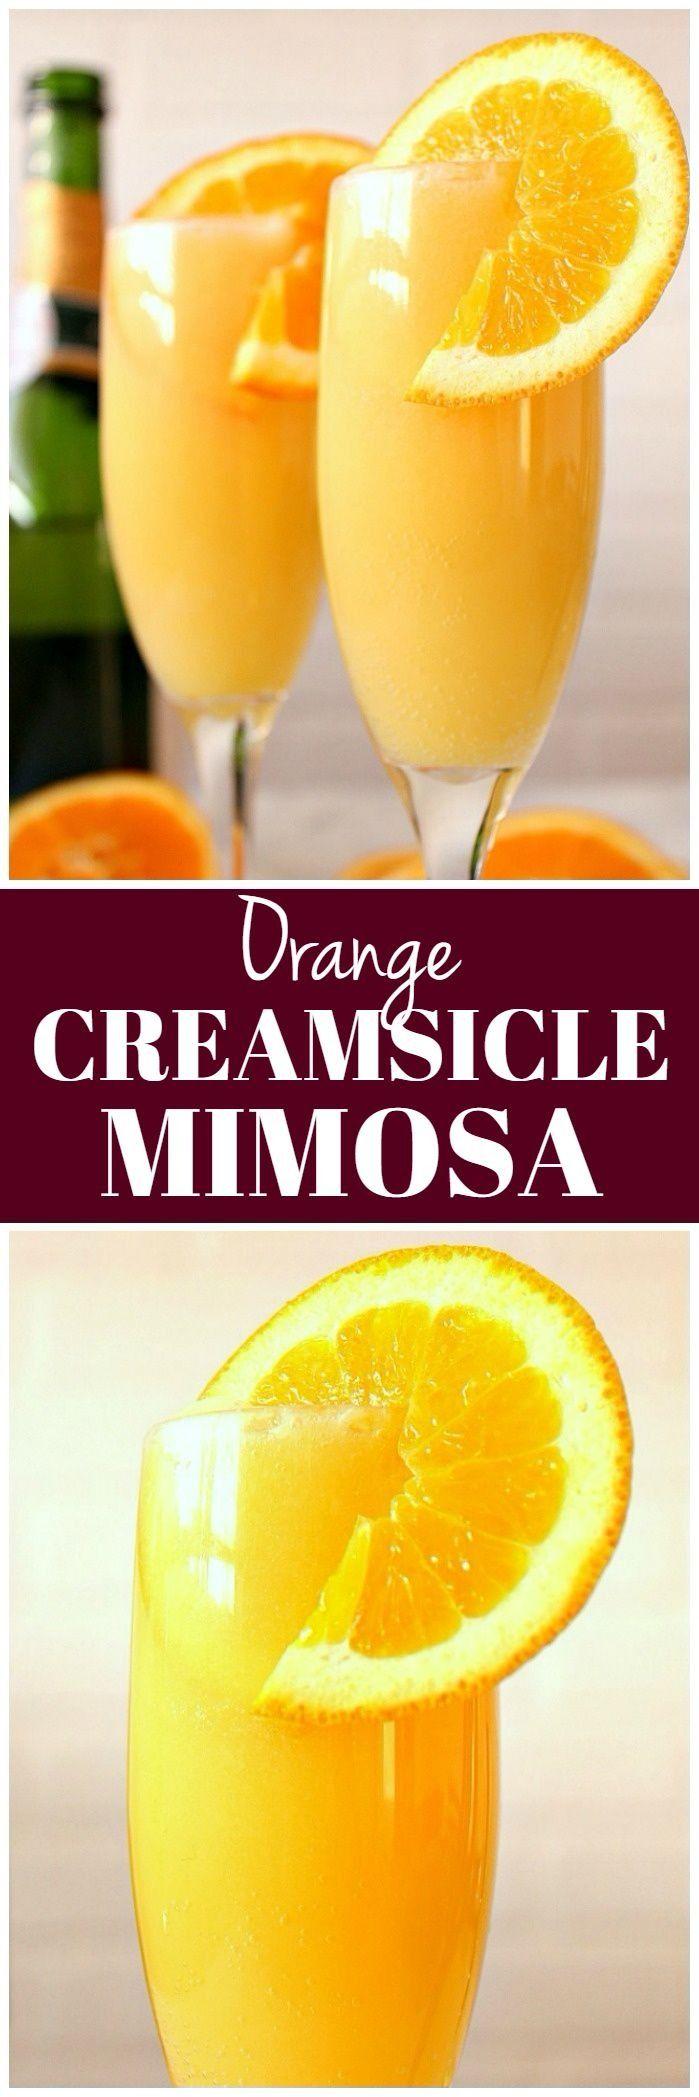 Wedding - Orange Creamsicle Mimosa